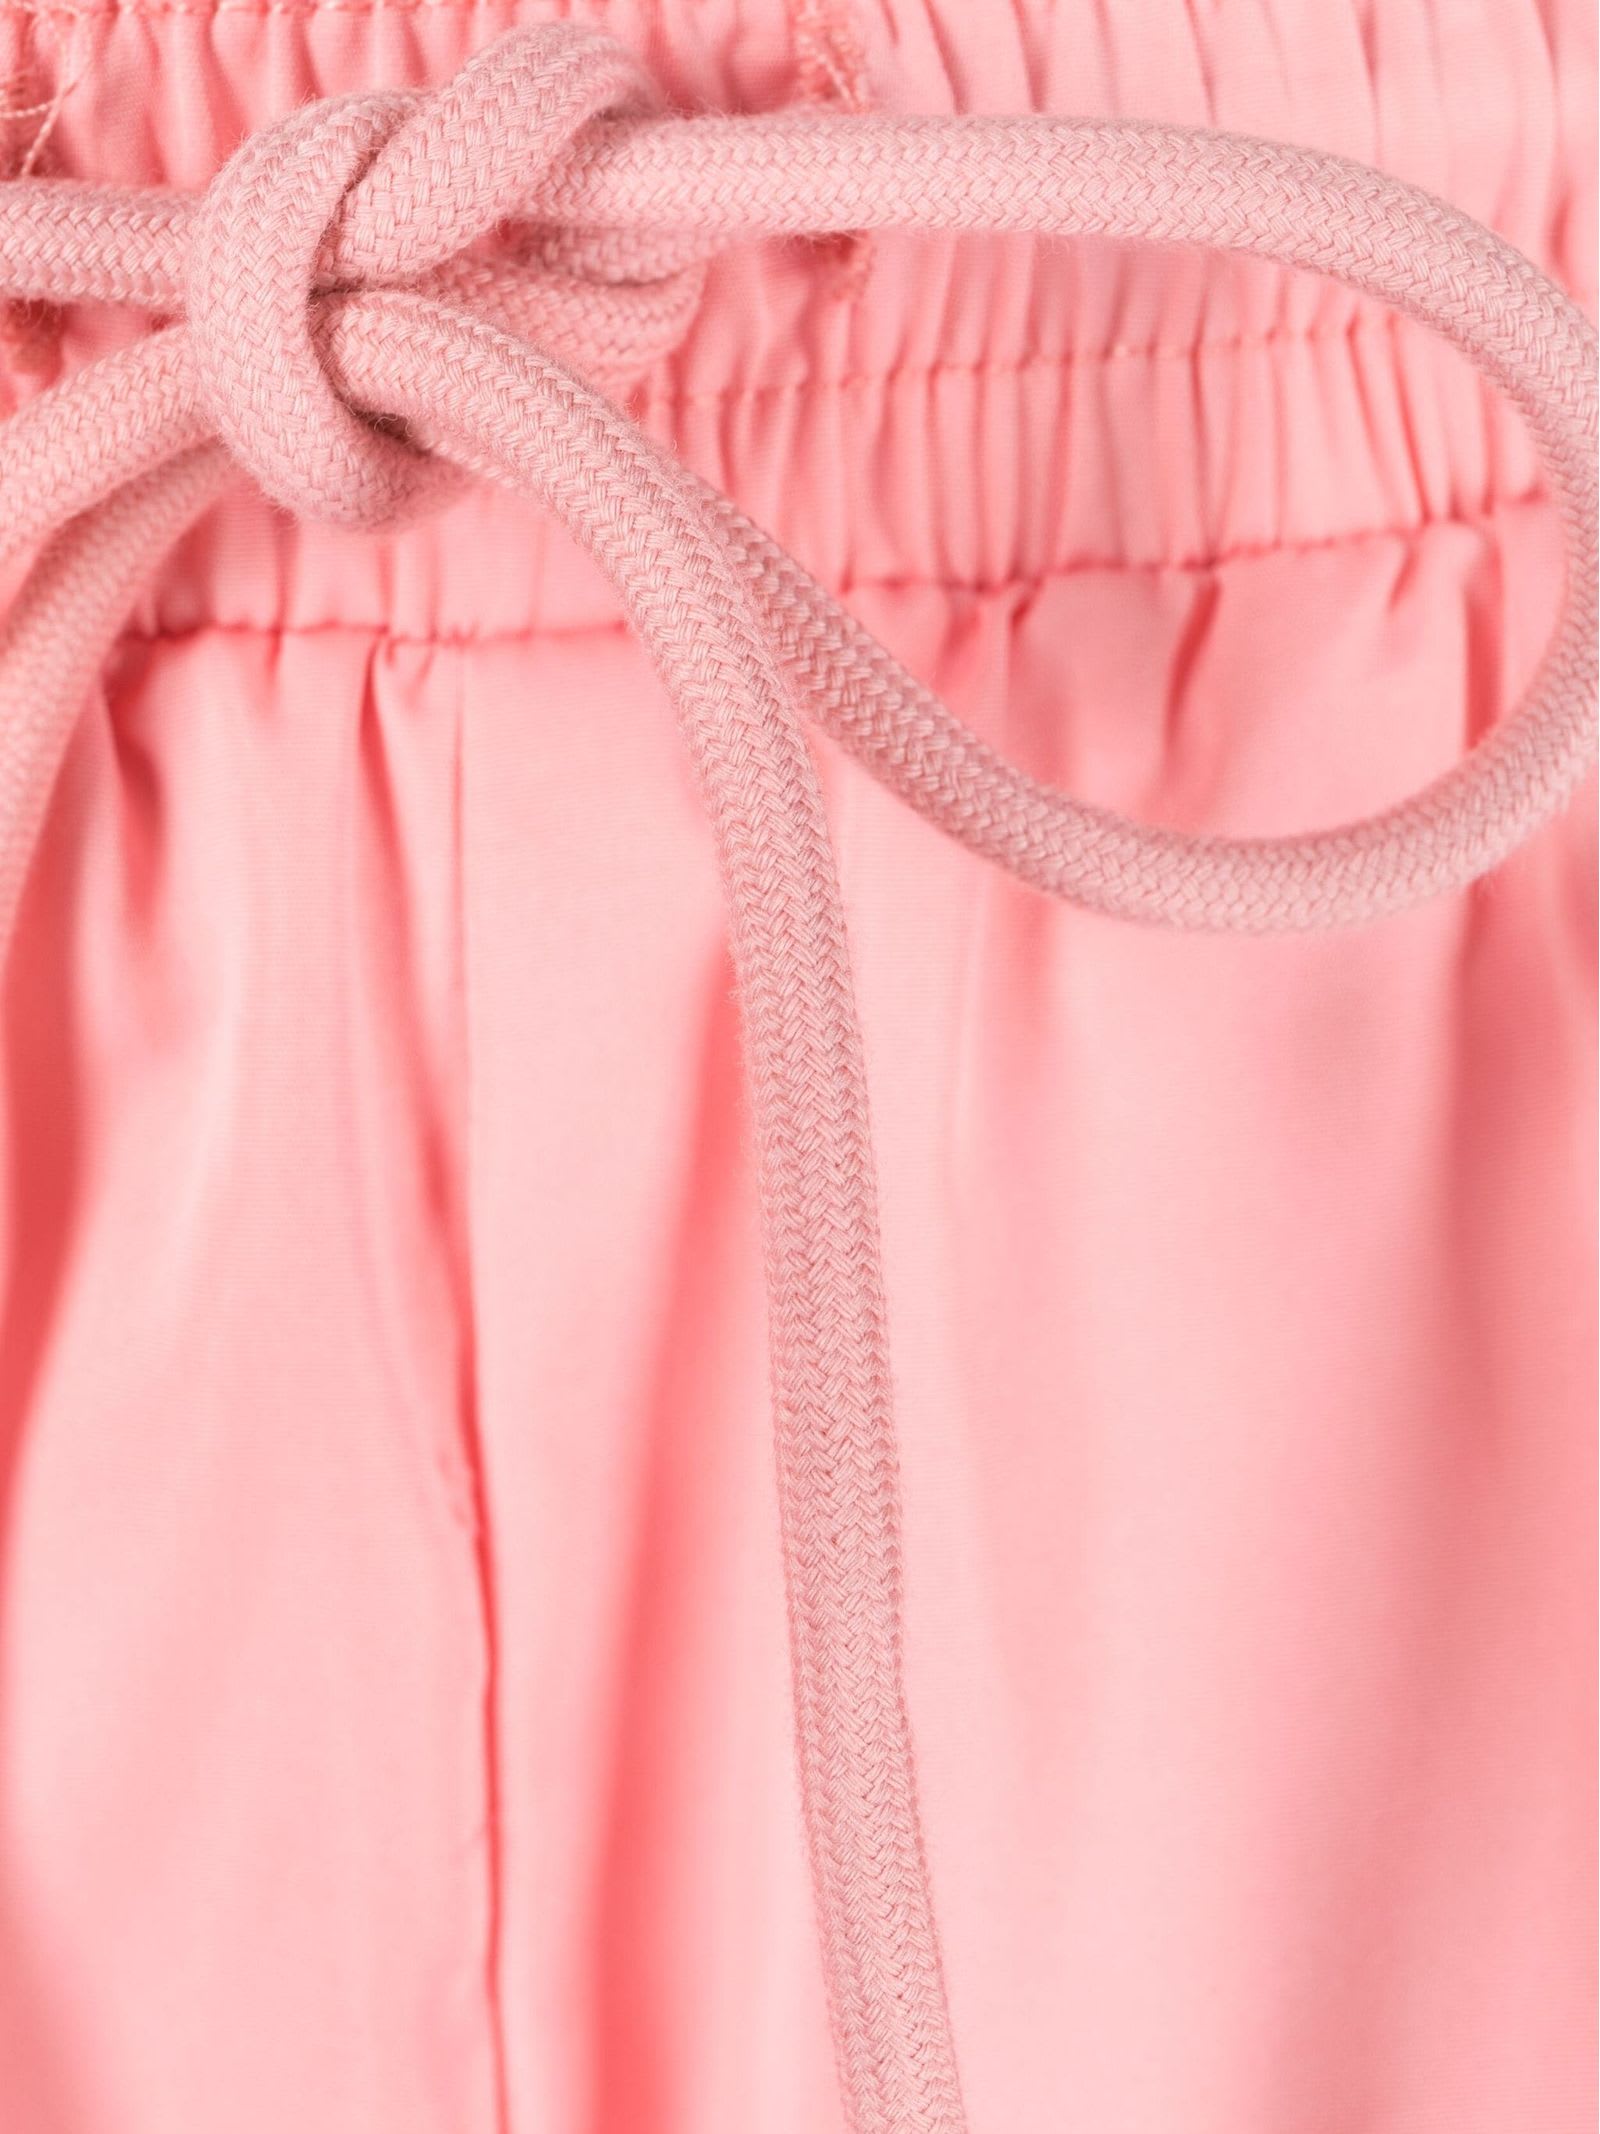 Shop Represent Sea Clothing Pink